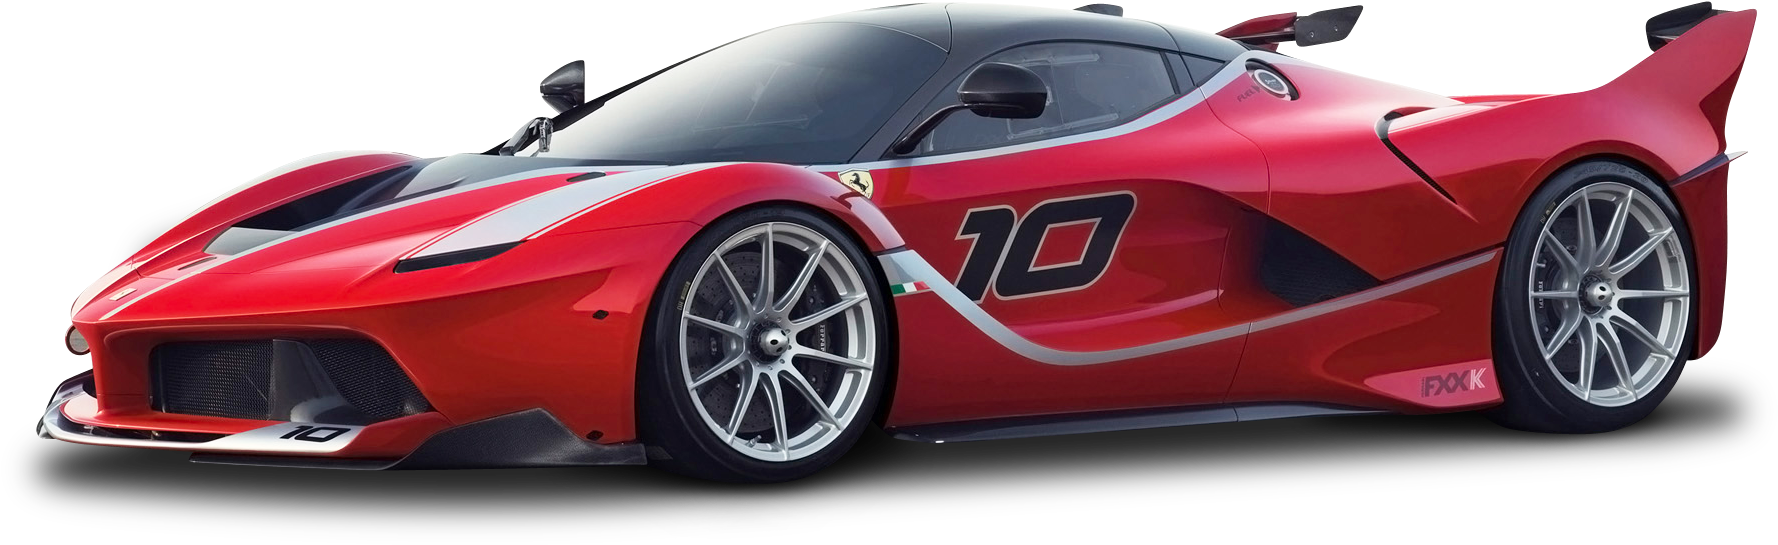 Red Ferrari Race Car Number10 PNG